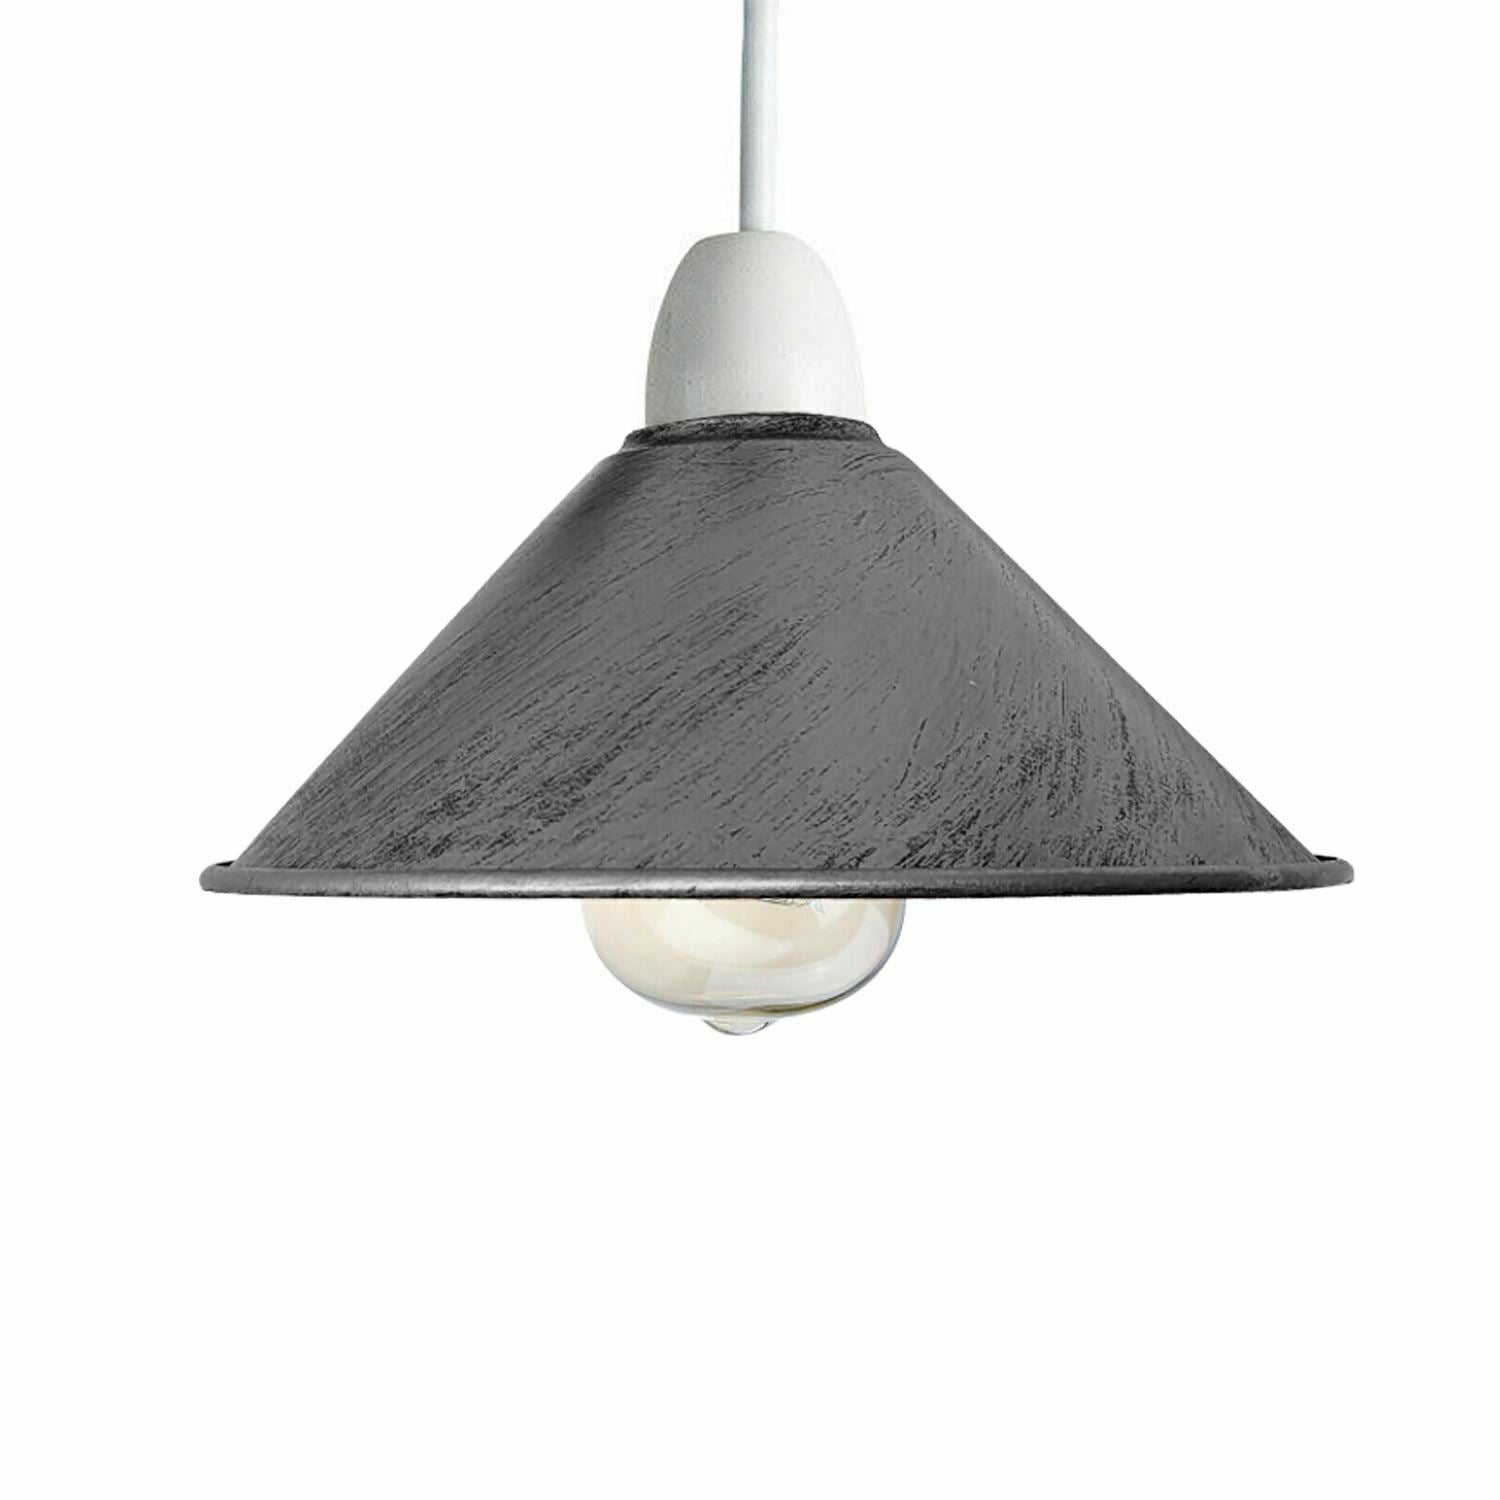 Grey Cone Pendant Lamp Shade.JPG